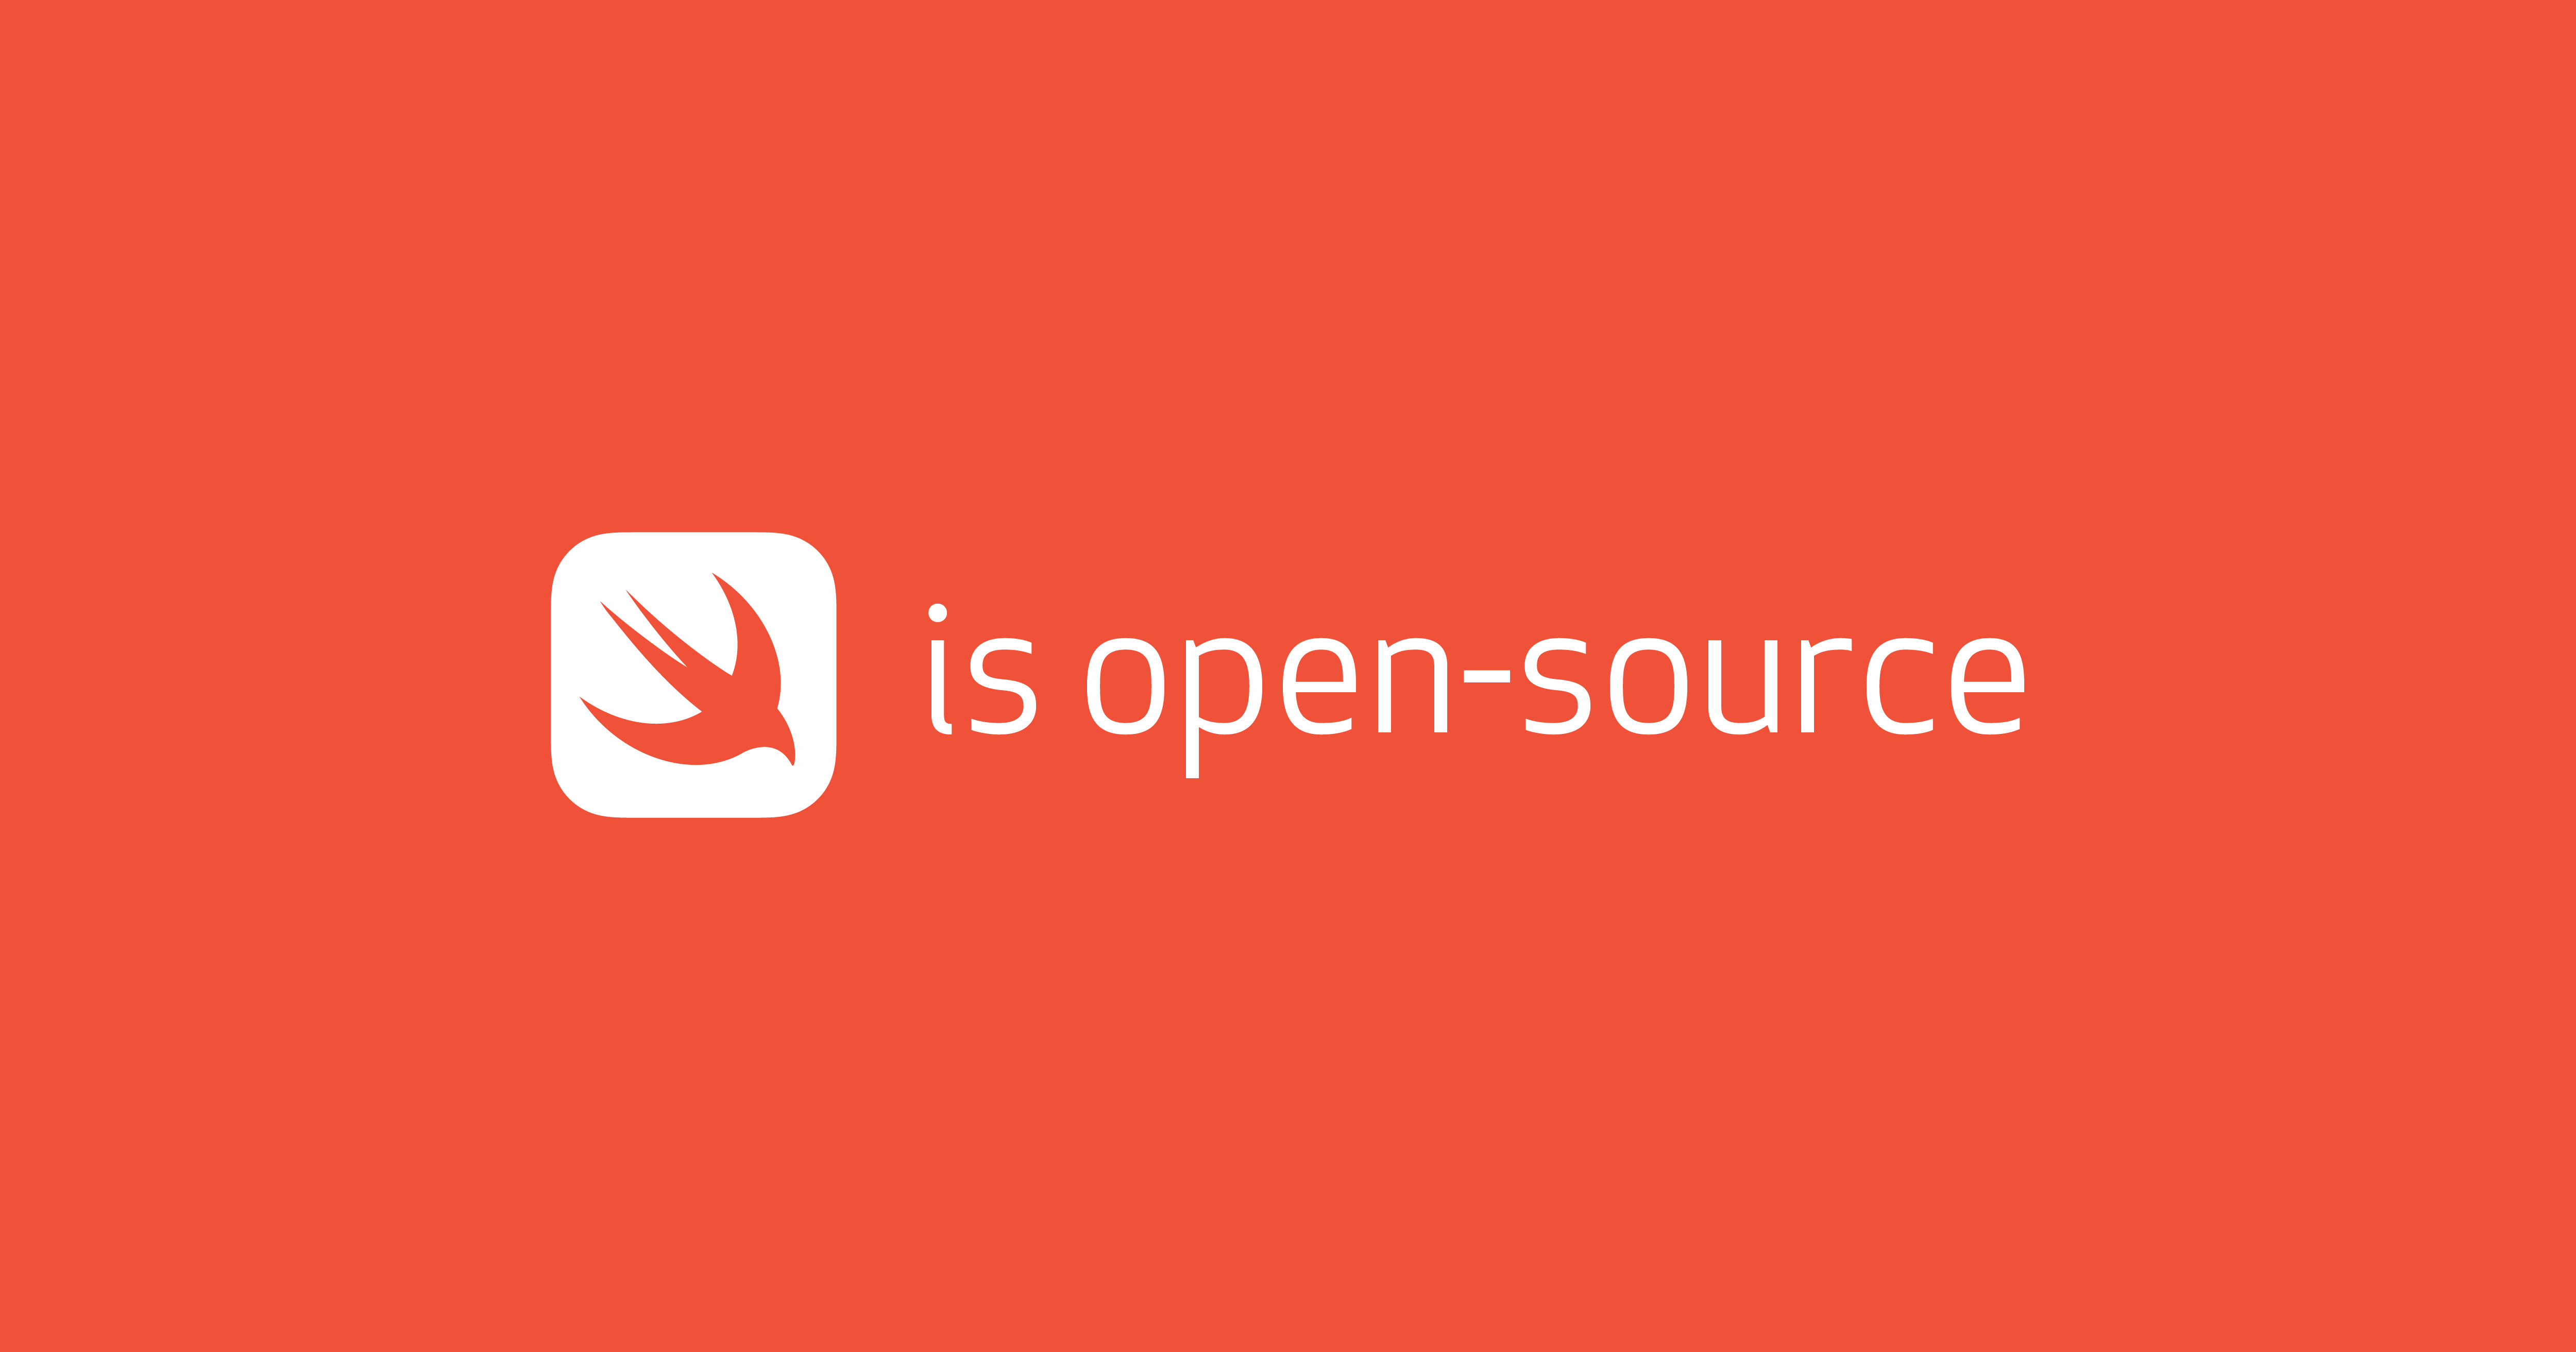 Swift is open-source